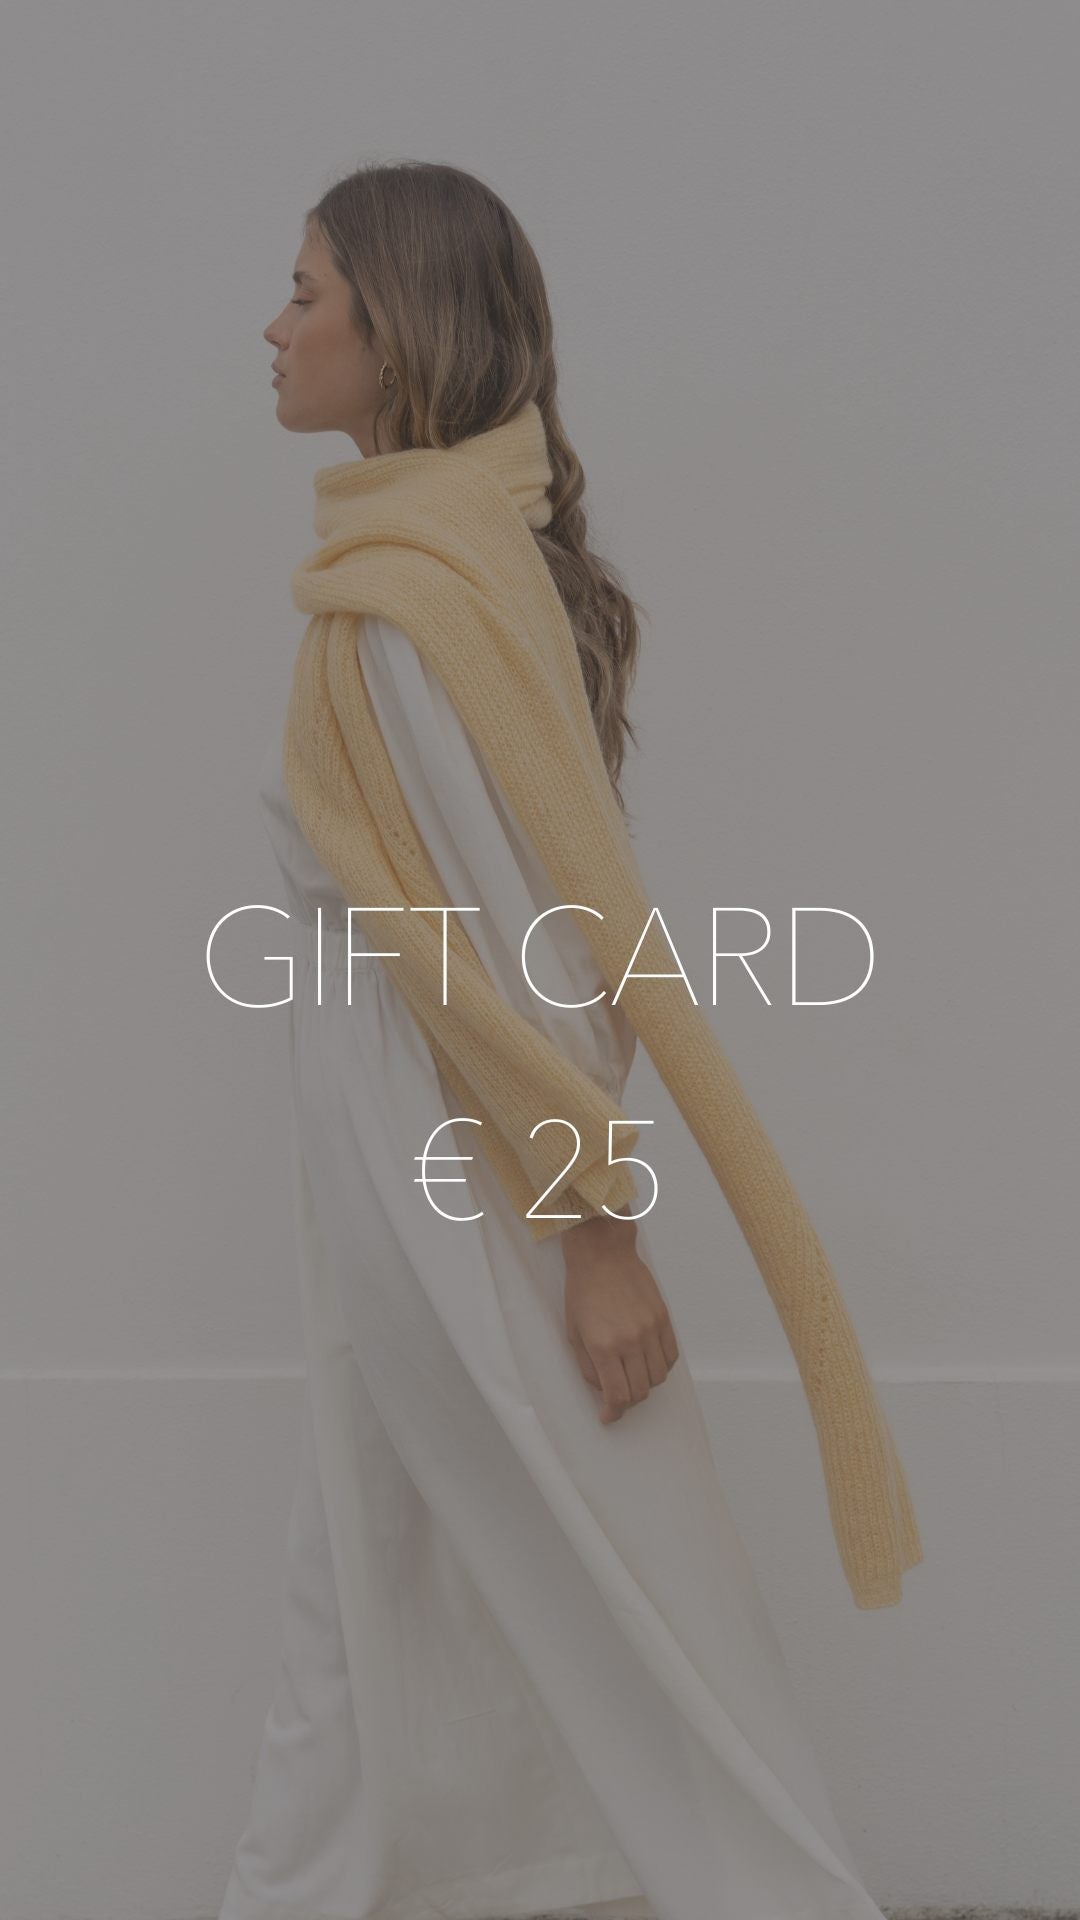 Gift Card - Geef een Sjaal!